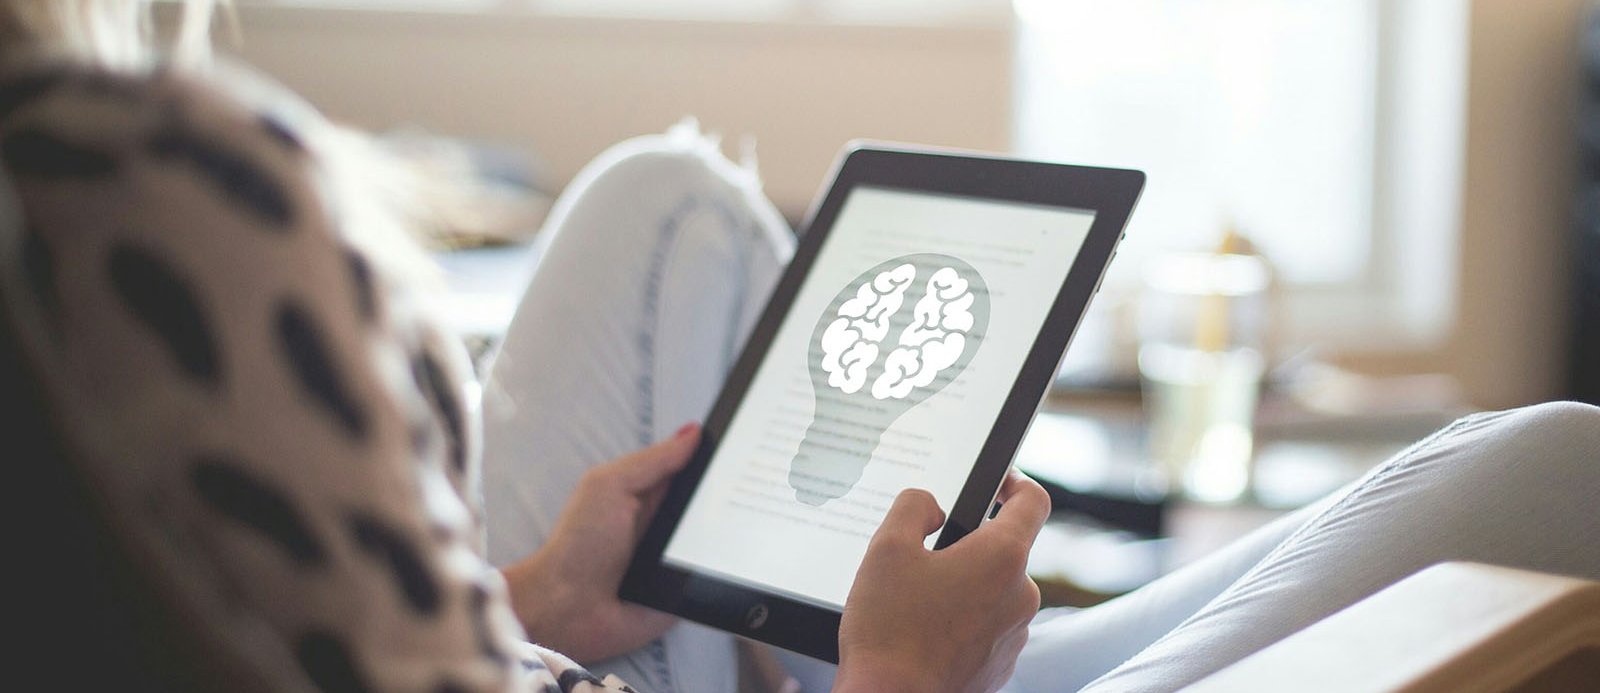 Una persona amb un ebook llegint un text acompanyat d'una representació d'un cervell